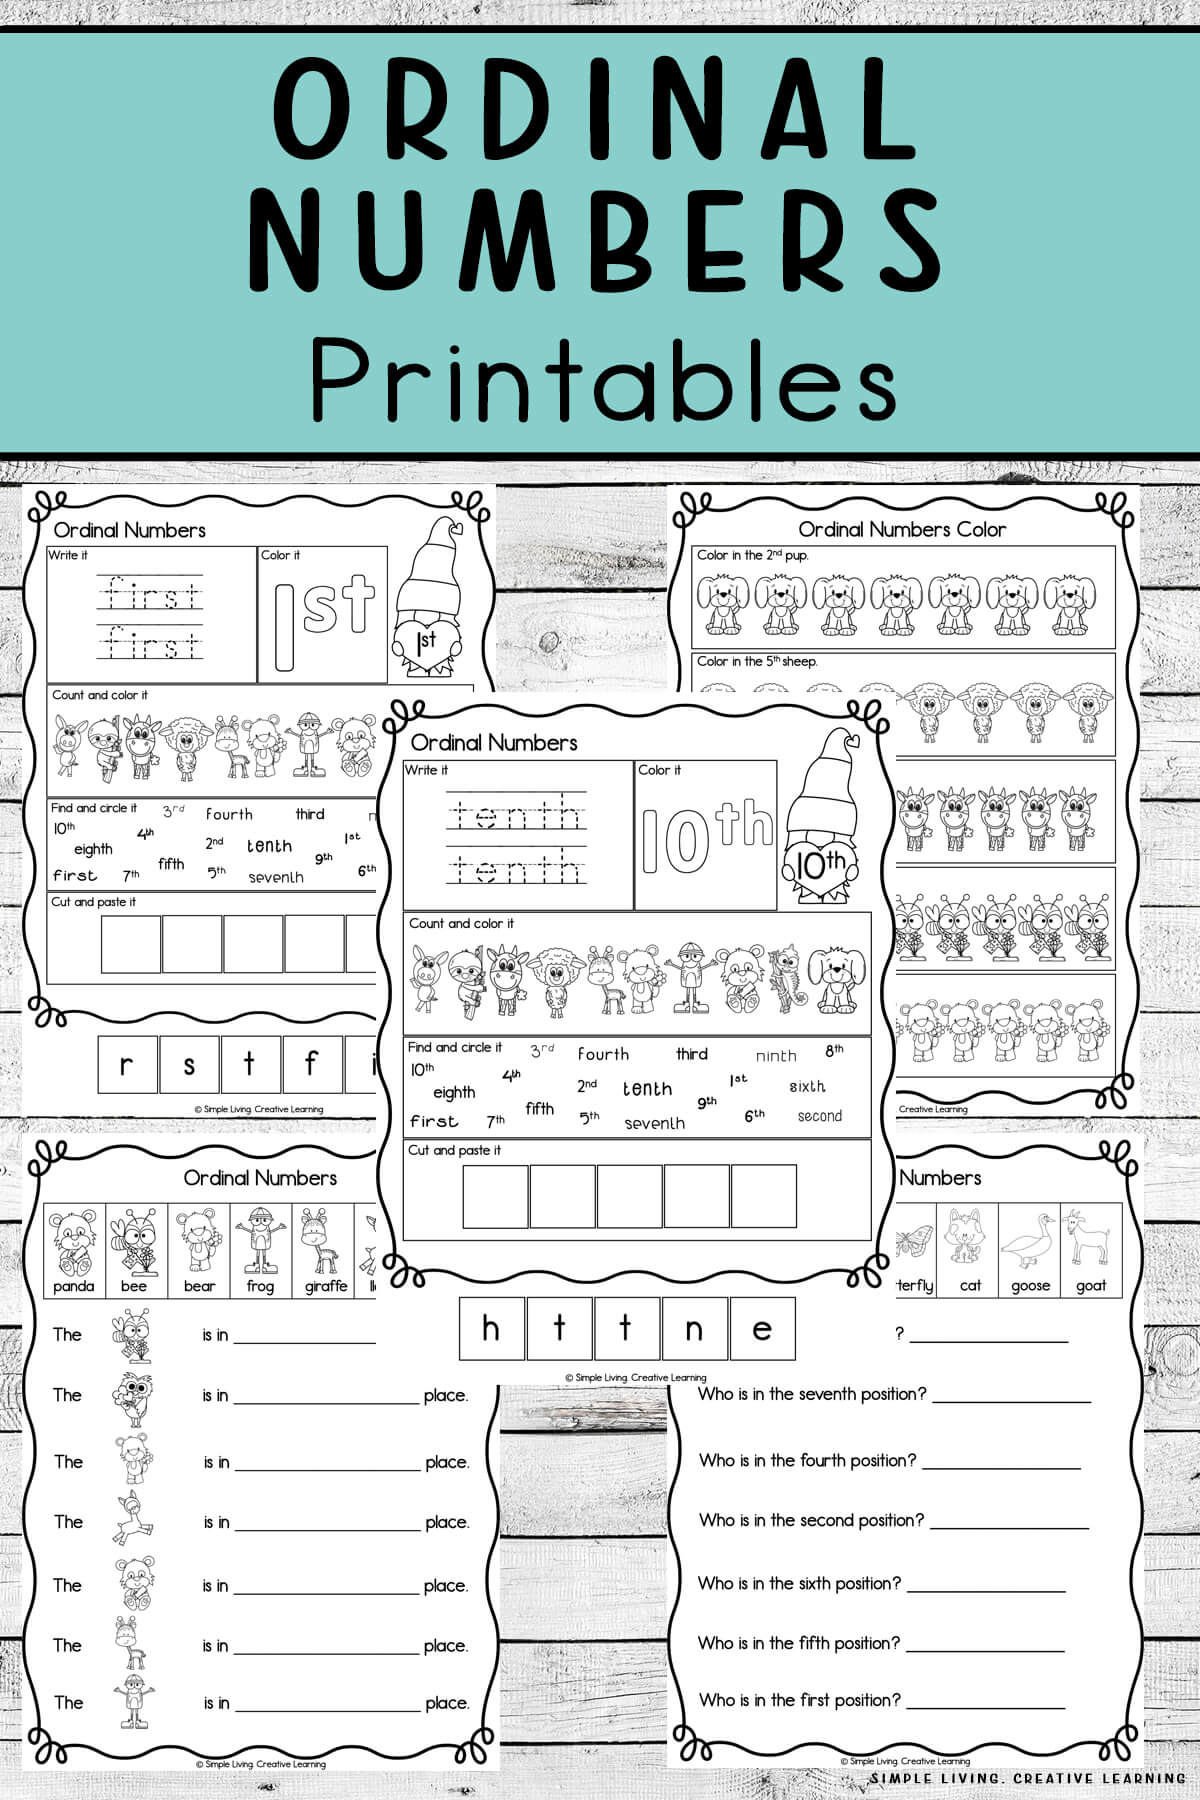 Ordinal Numbers Printables